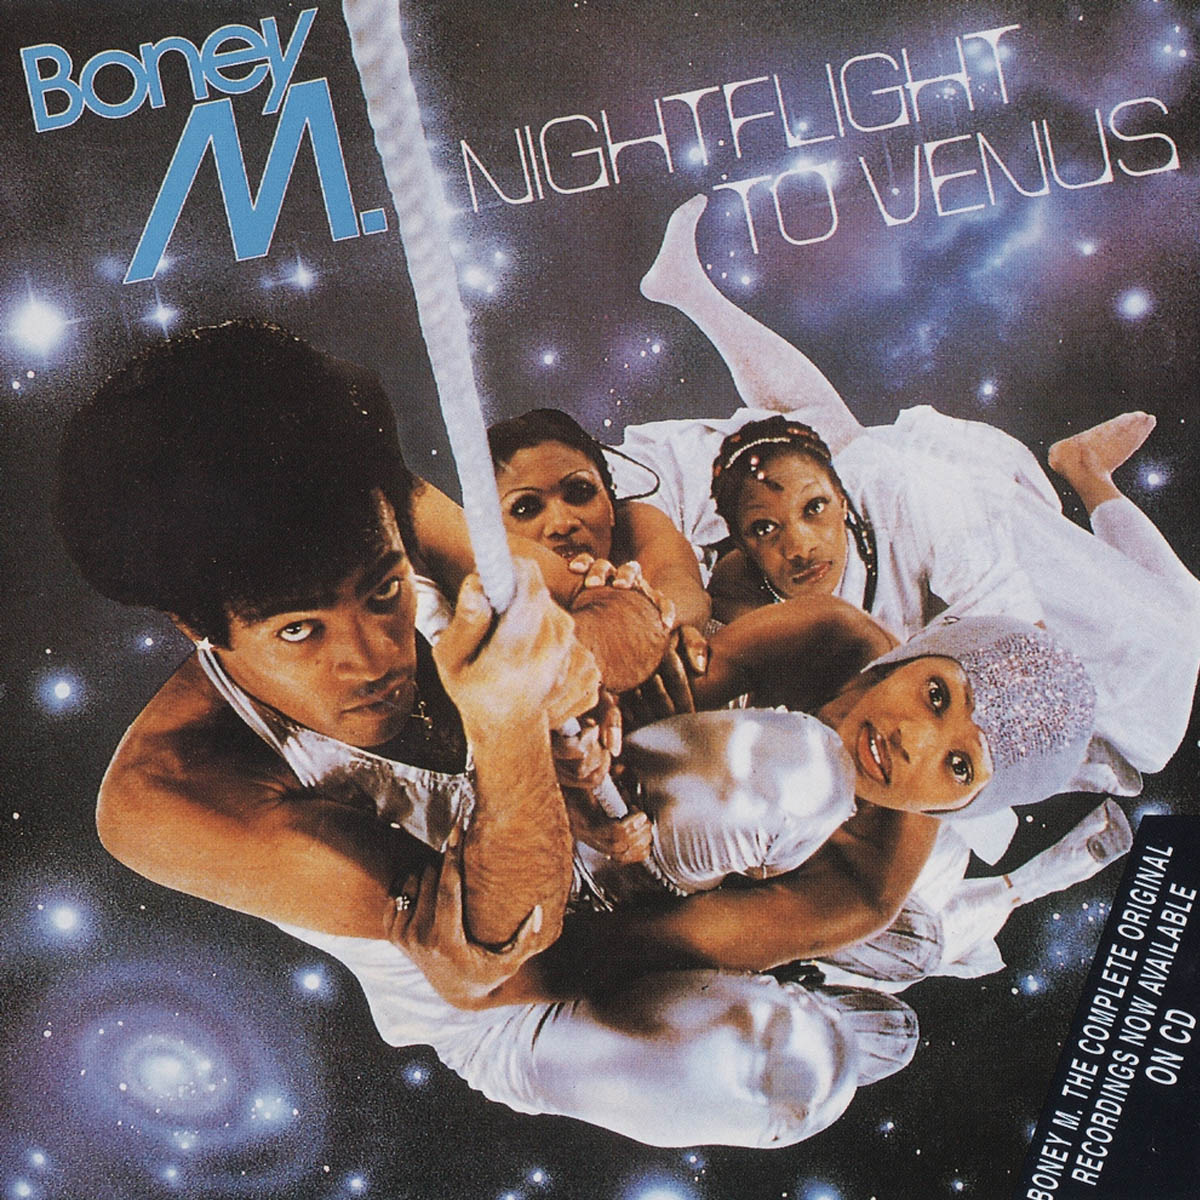 Boney M. 的專輯封面“Nightflight to Venus”（1078）